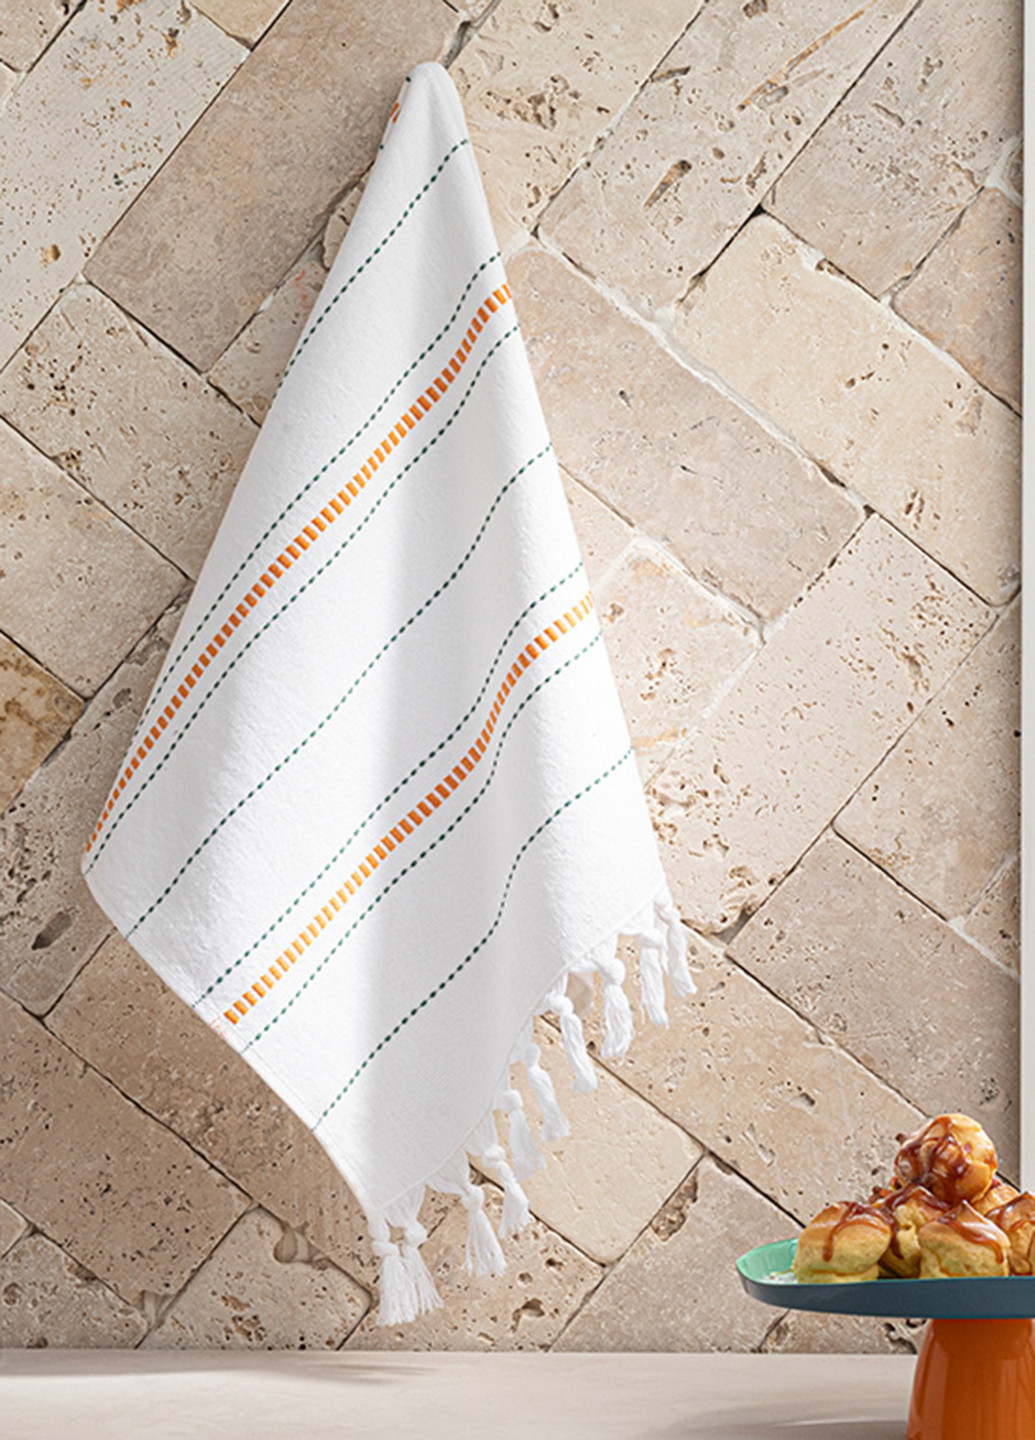 English Home полотенце, 30х50 см полоска белый производство - Турция